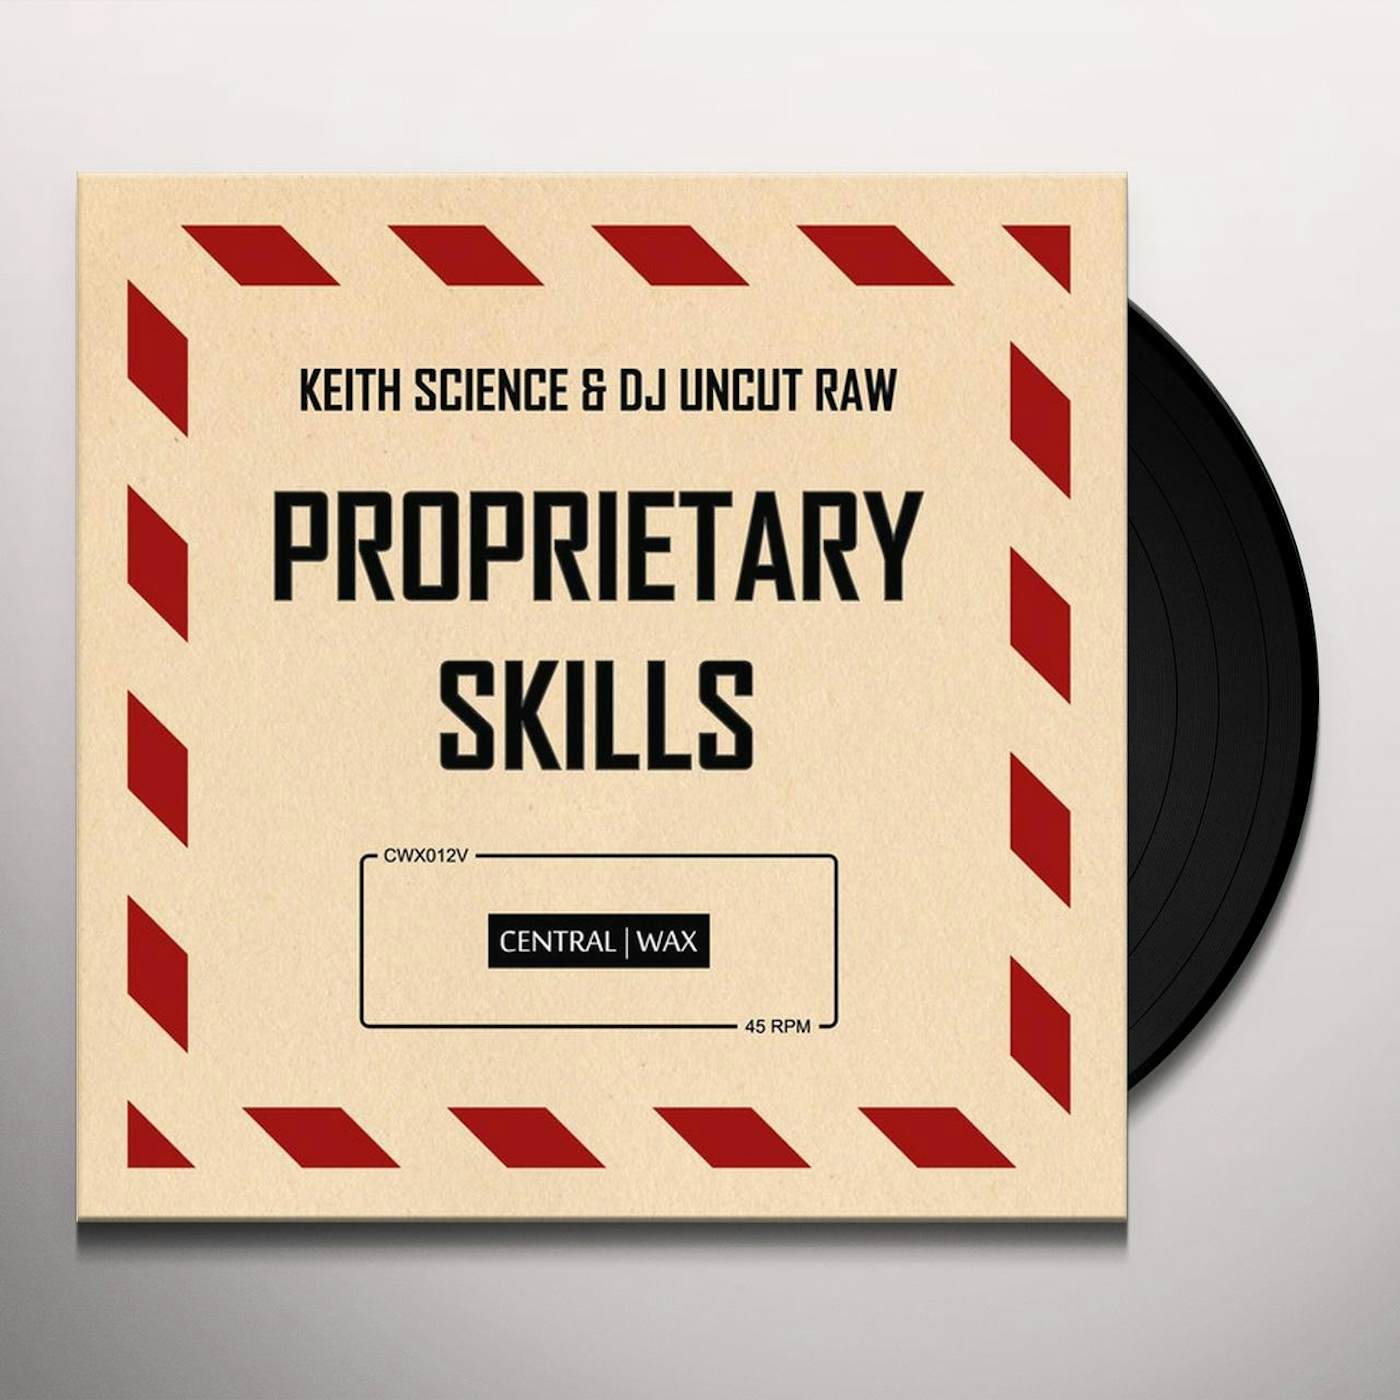 Keith Science Proprietary Skills Vinyl Record